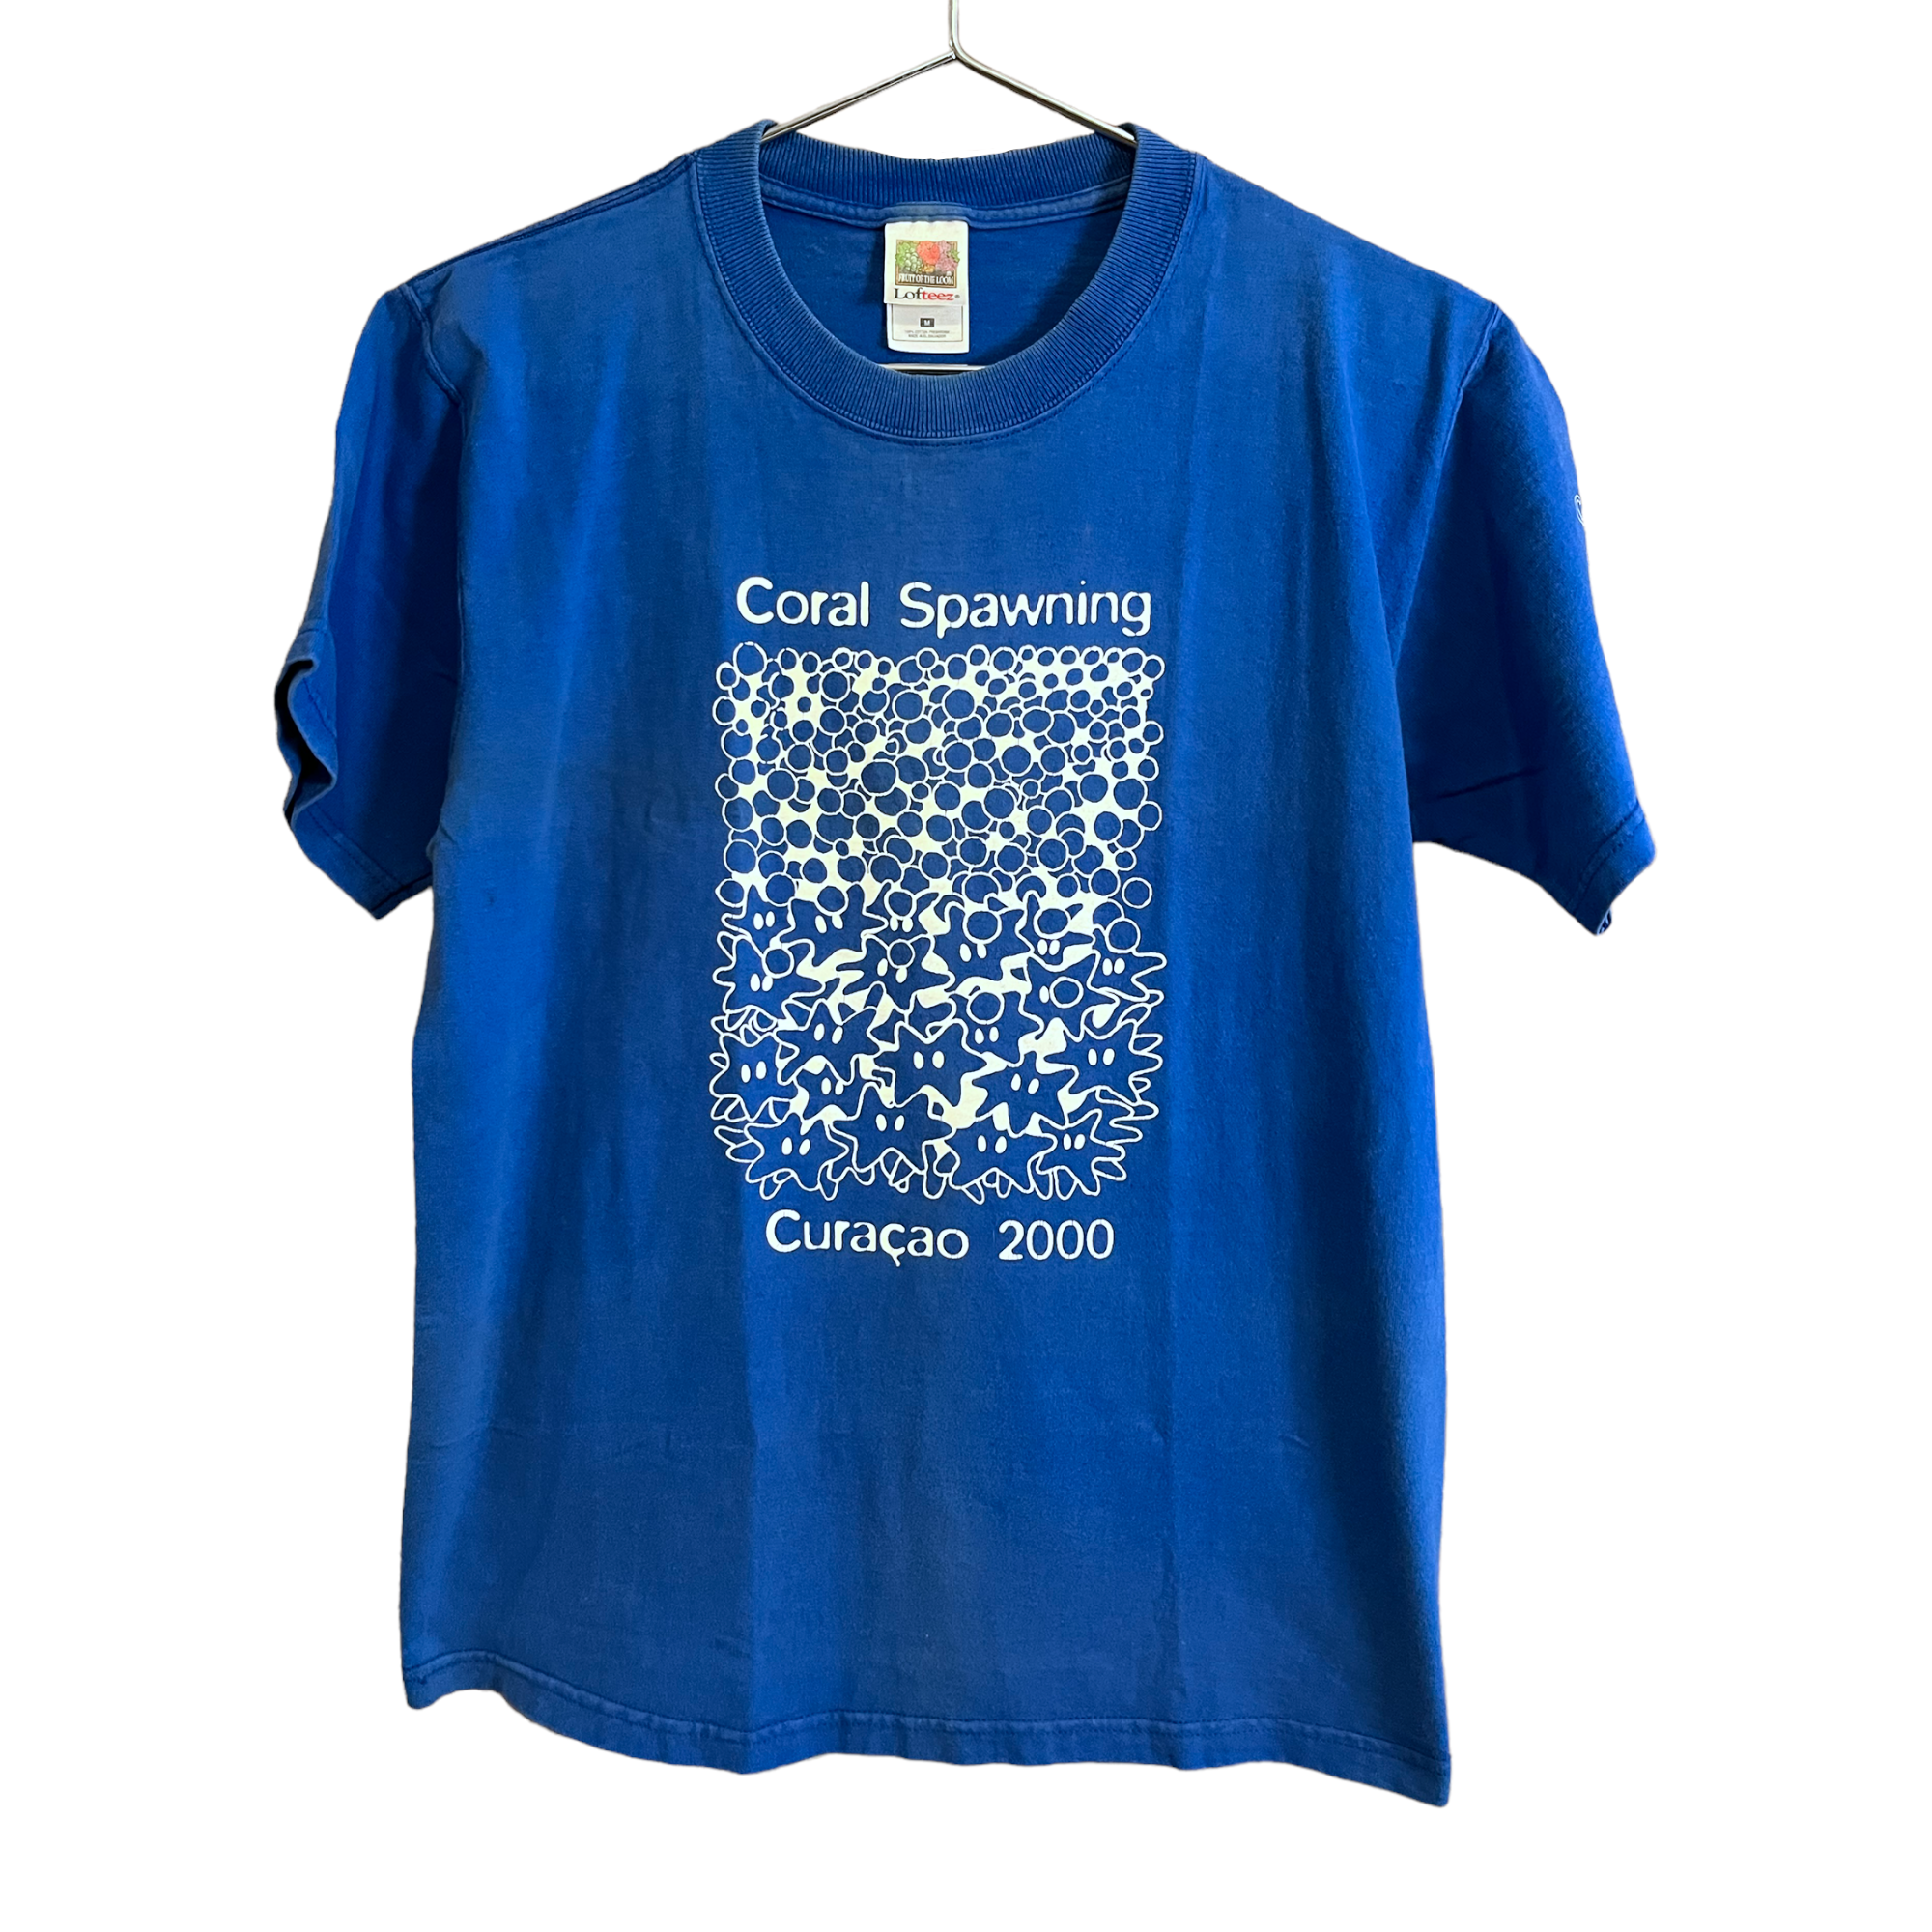 2000 Coral Spawning Curaçao Vintage T-Shirt - Blue - M